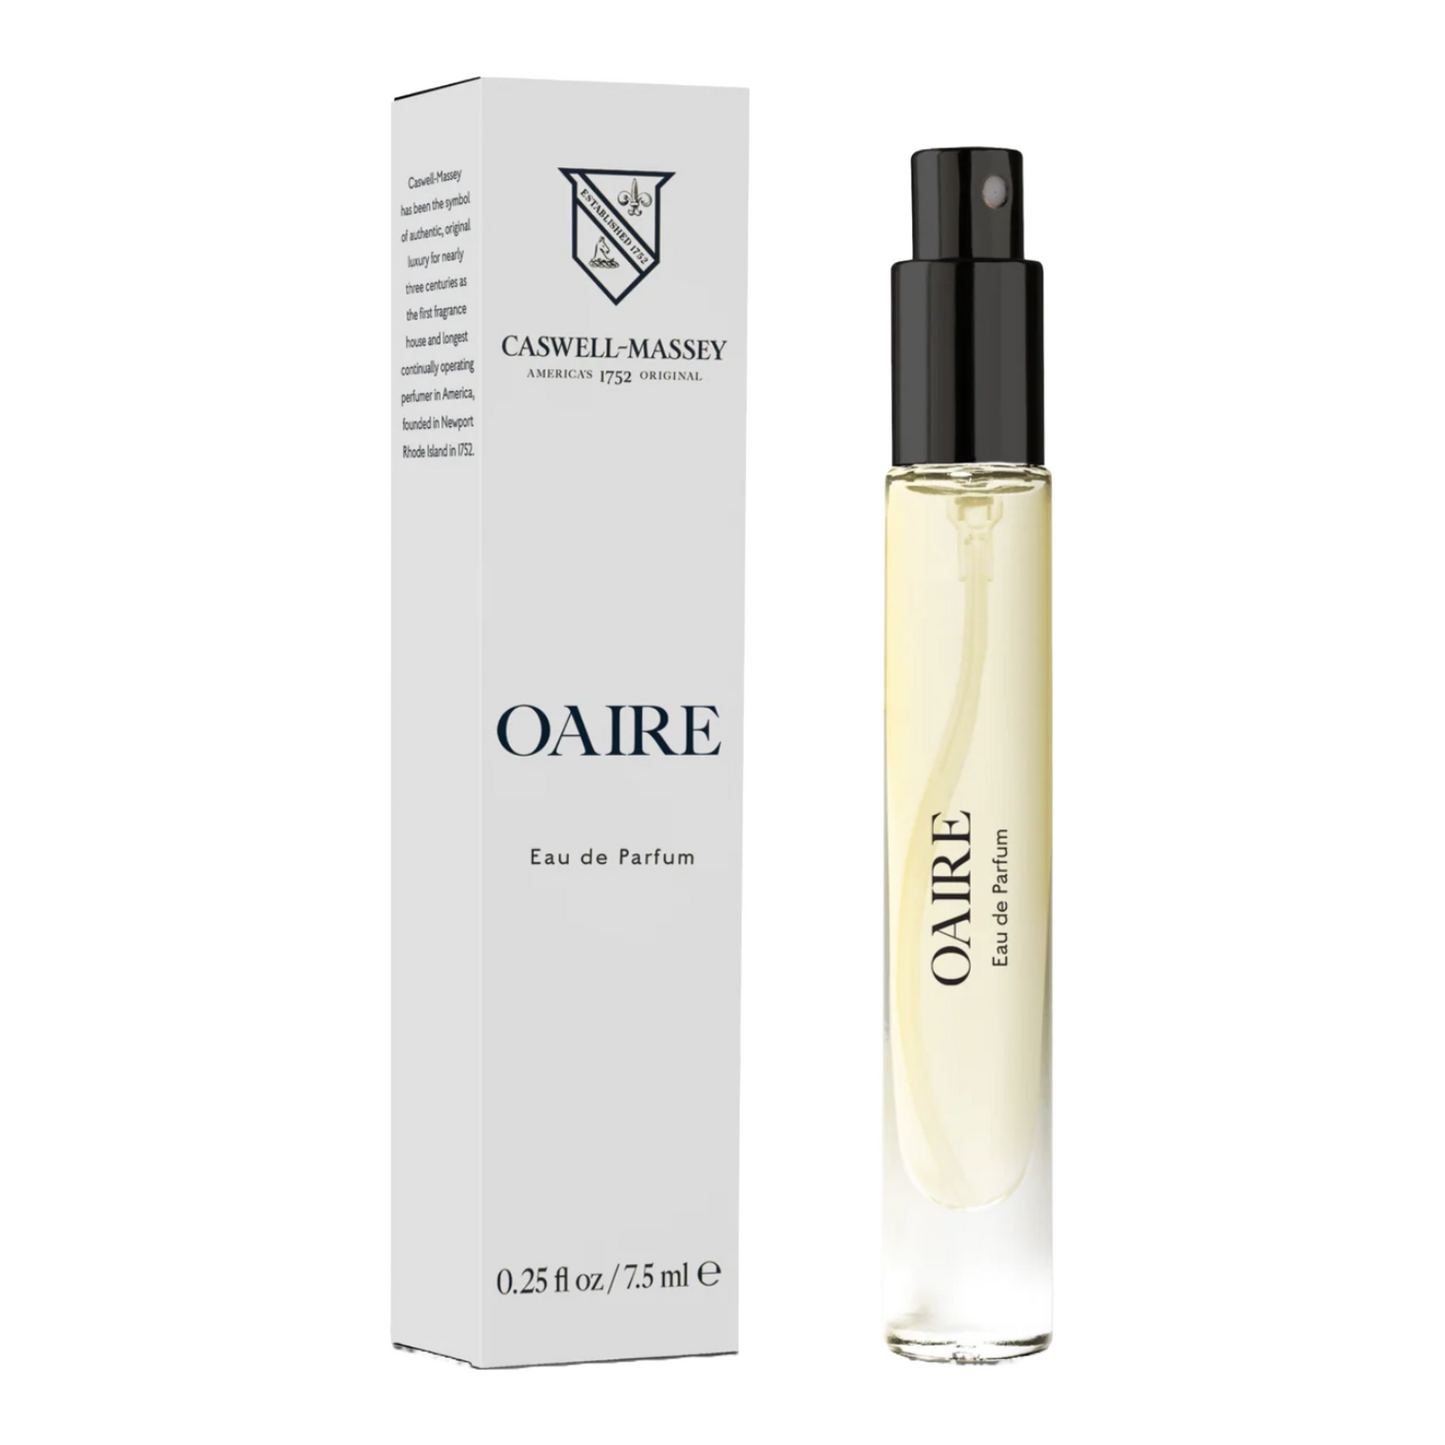 Oaire Eau De Parfum Fragrance Vial by Caswell-Massey